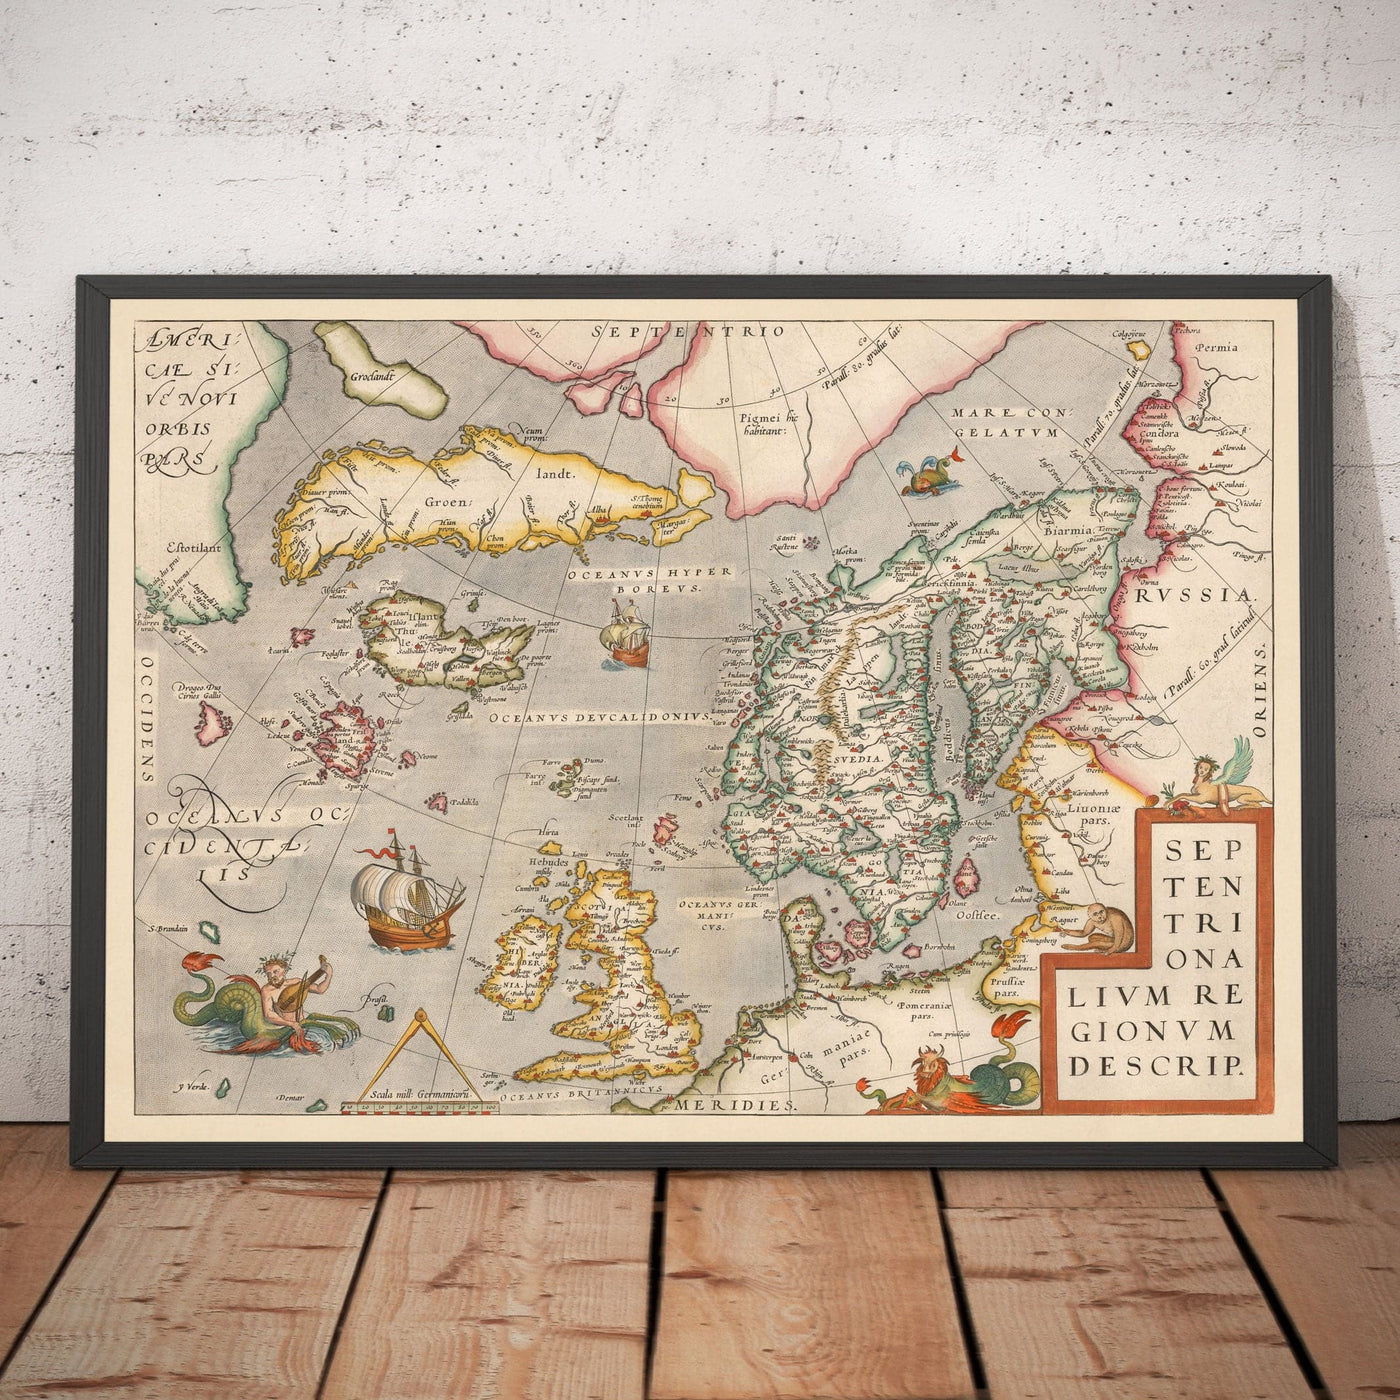 Alte Karte von Nordsee und Atlantik, 1575 mit mythischen Frisland von Abraham Ortelius - Skandinavien, britische Inseln, Island, Grönland